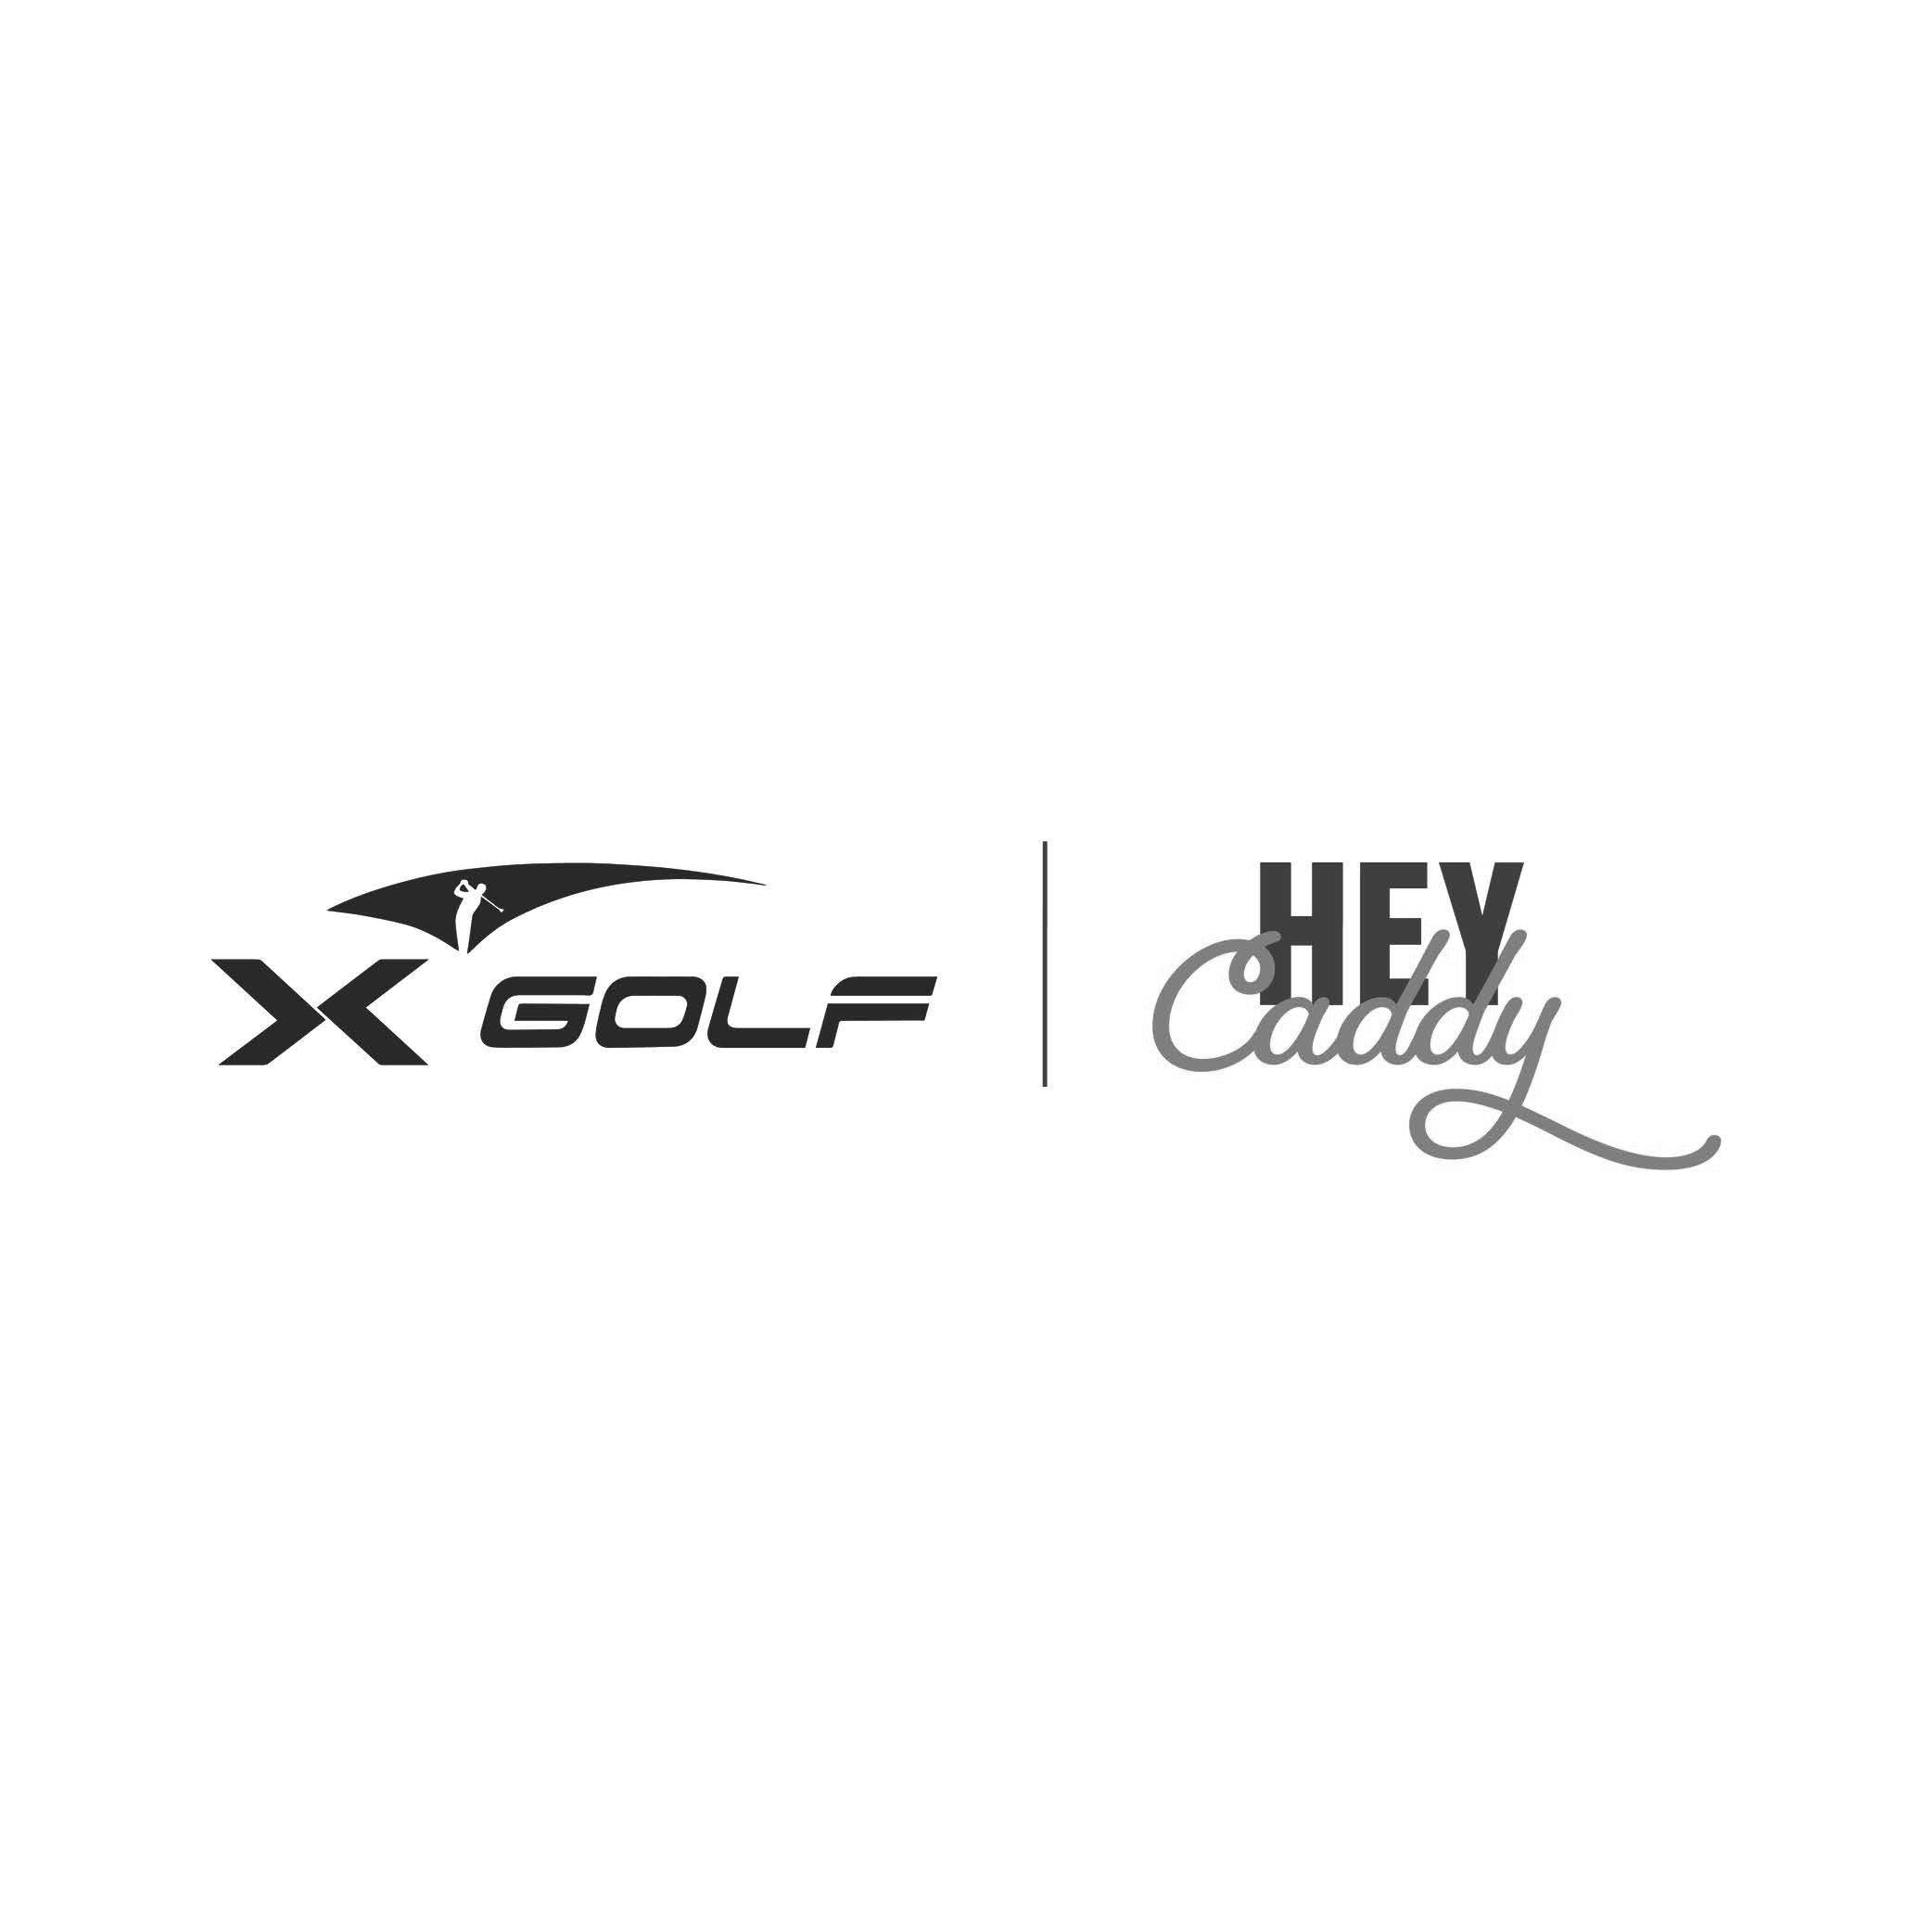 X-Golf & Hey Caddy